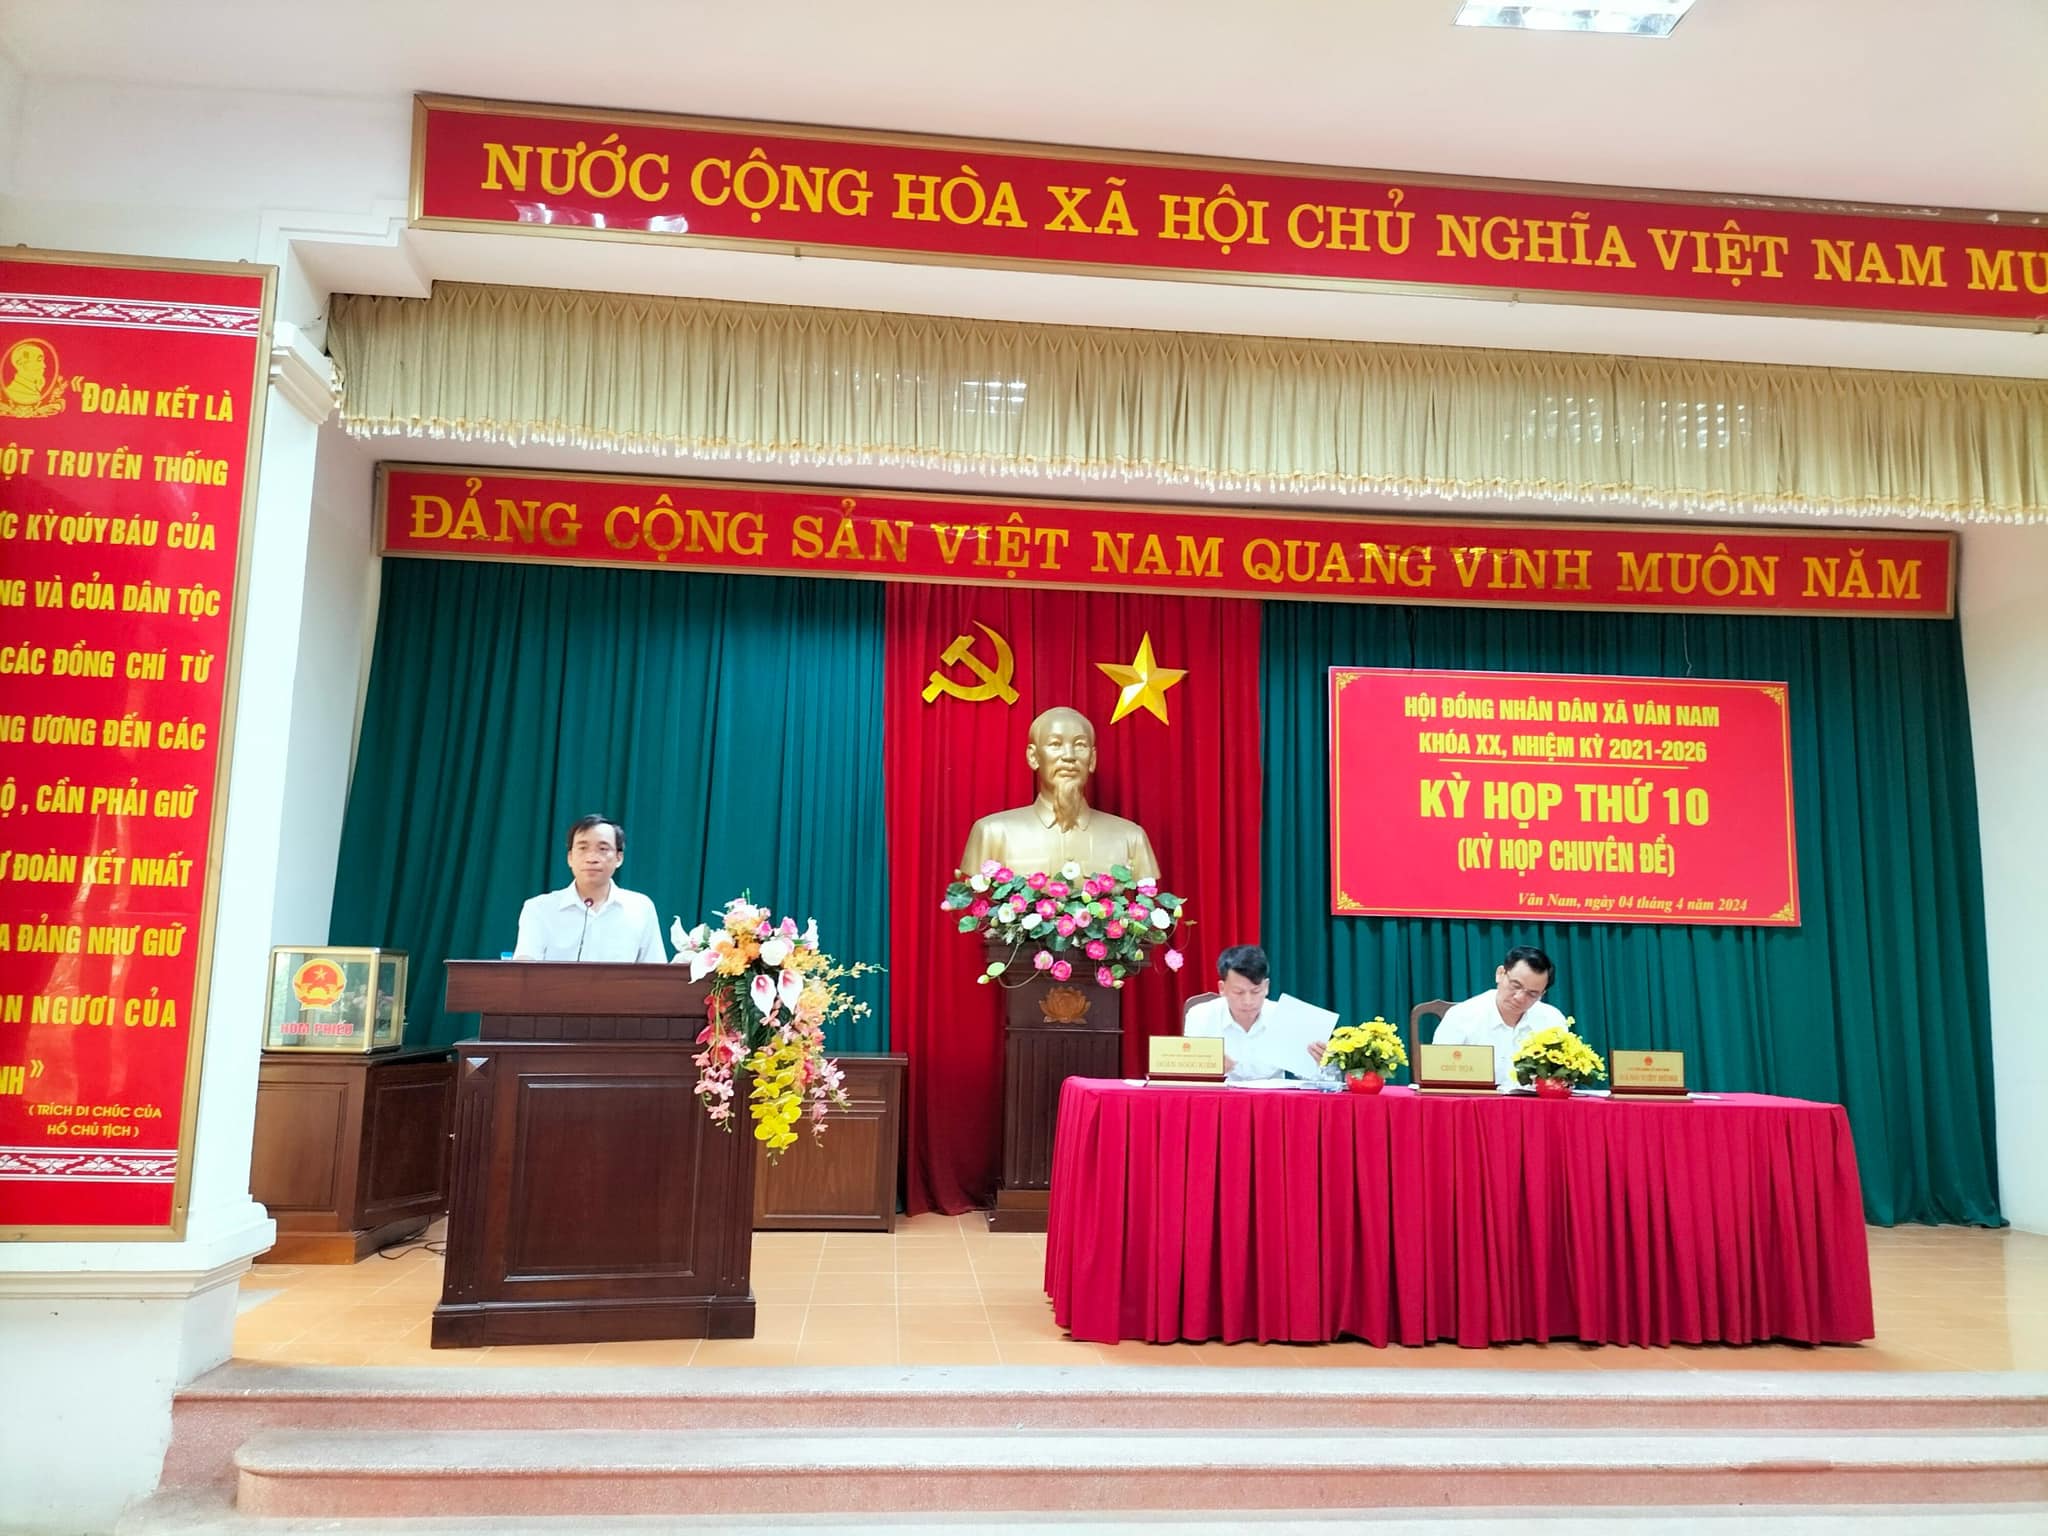 HĐND xã Vân Nam tổ chức Kỳ họp thứ 10 (kỳ họp chuyên đề) về chủ trương thành lập xã Nam Hà trên cơ sở nhập xã Vân Hà vào xã Vân Nam.